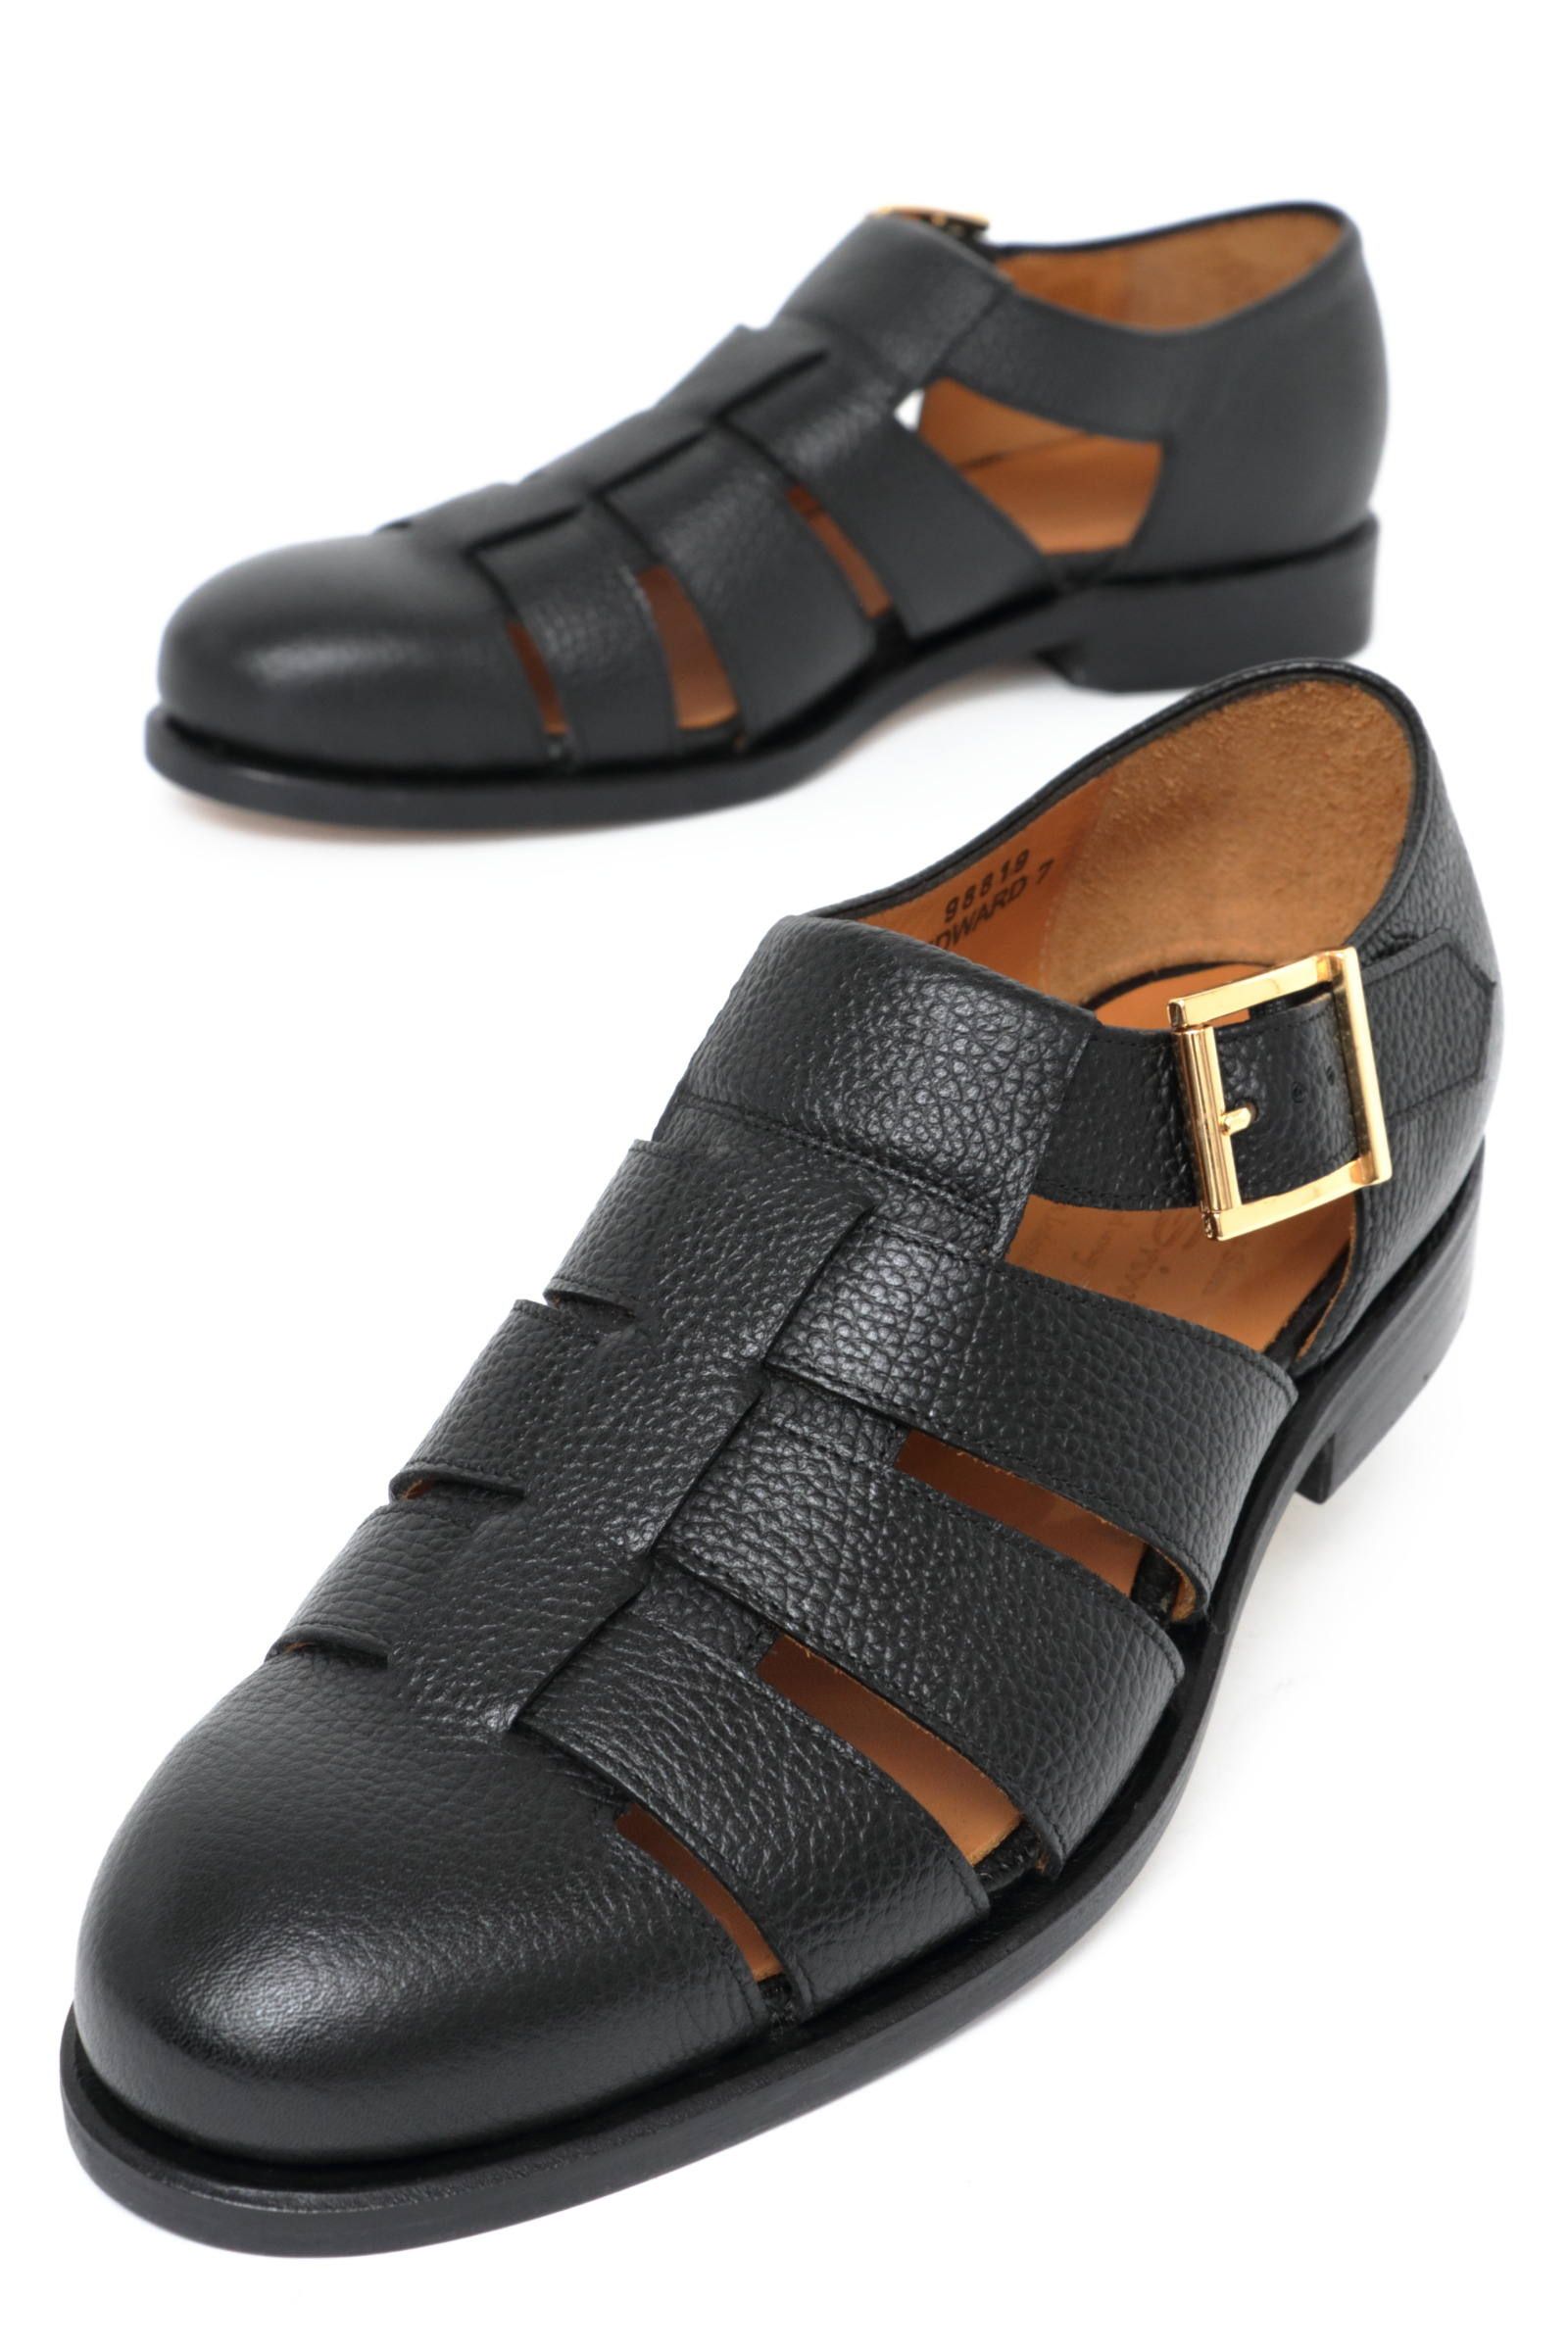 サンダル以上、革靴未満なオトナの夏靴「グルカサンダル」 | BEKKU HOMME